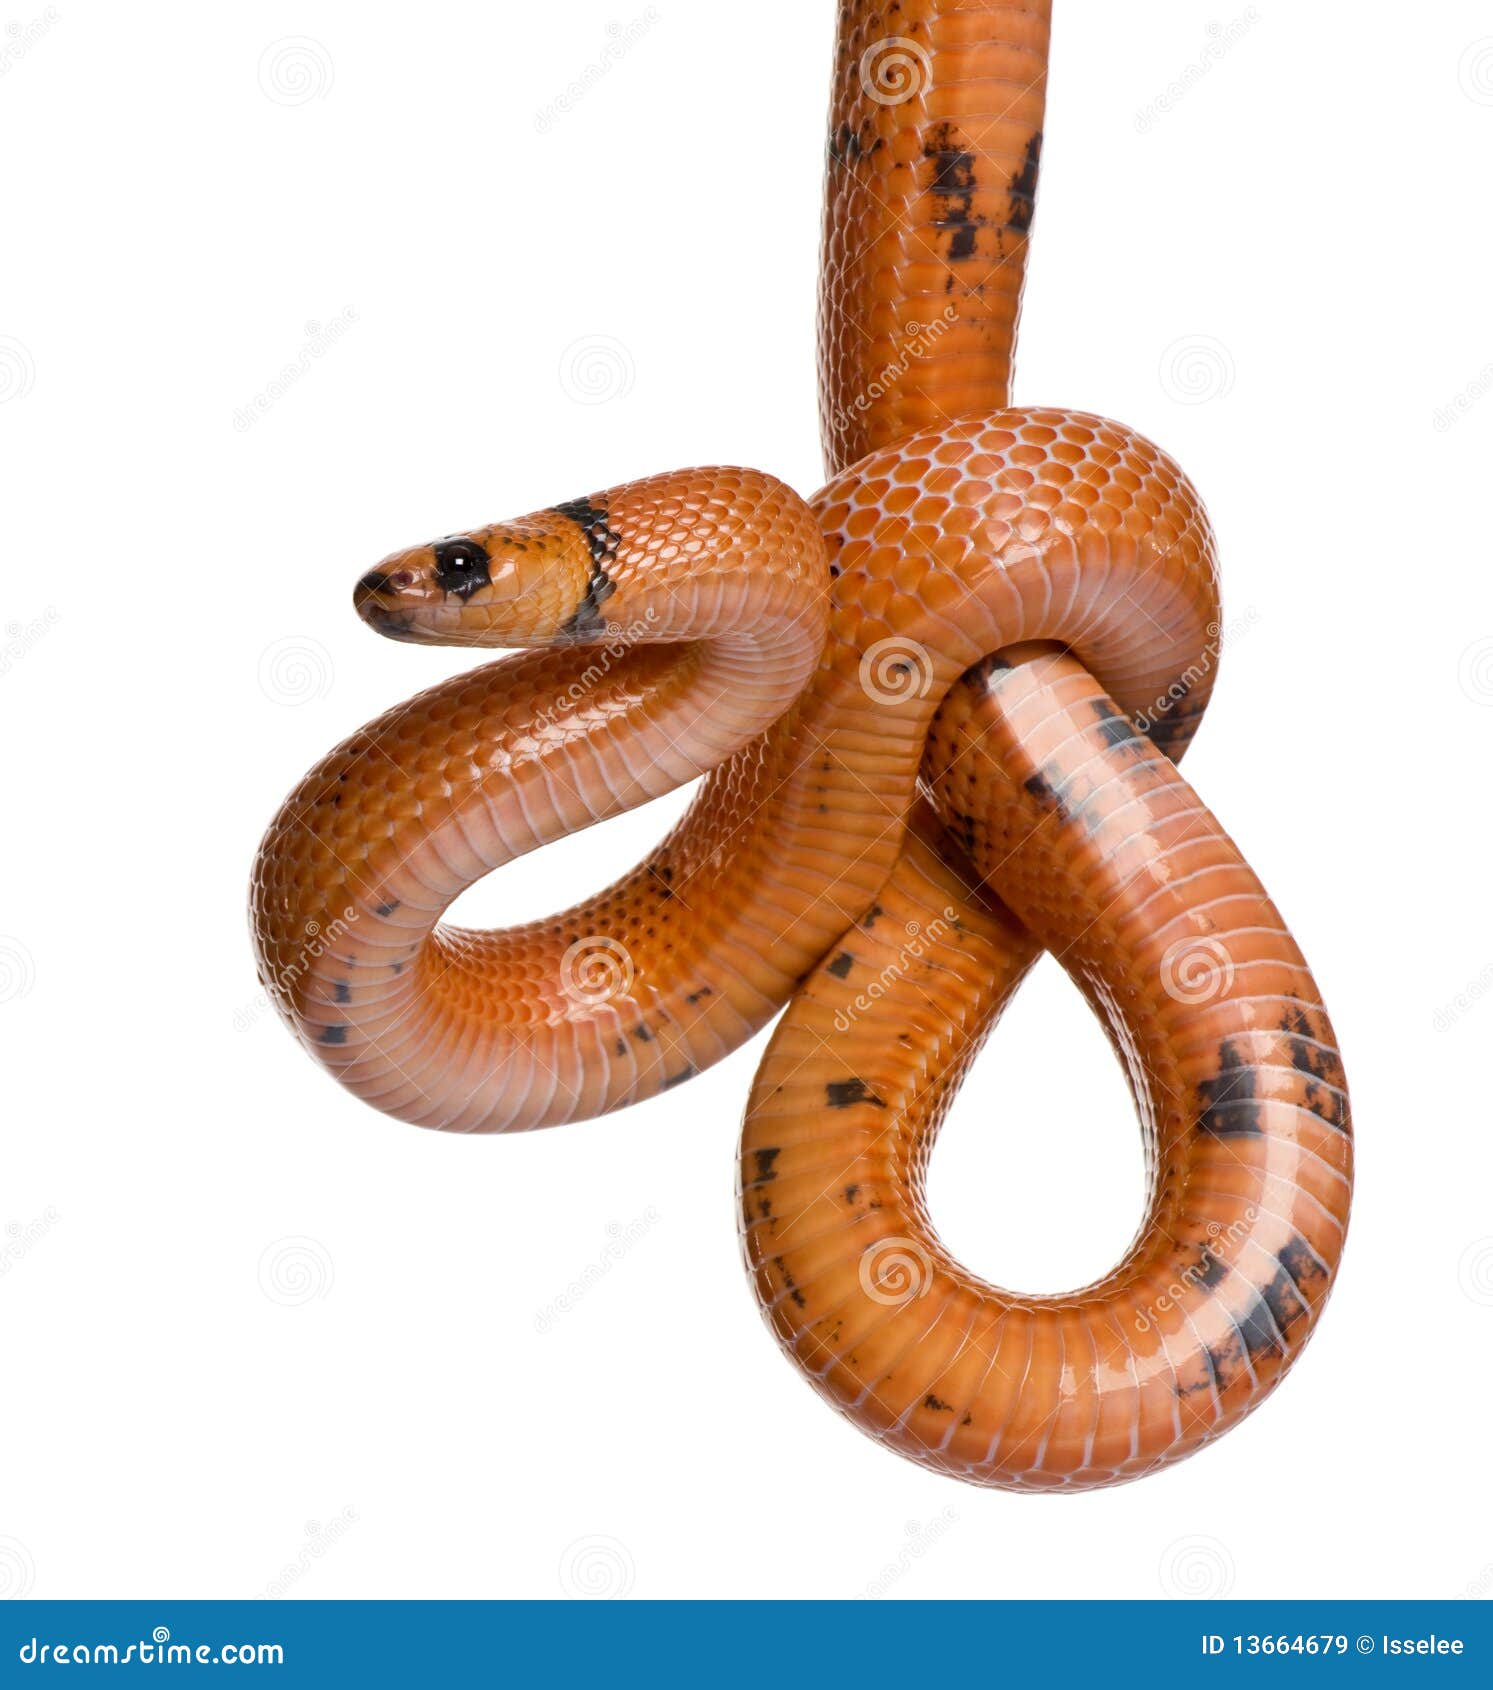 side view of honduran milk snake, hanging